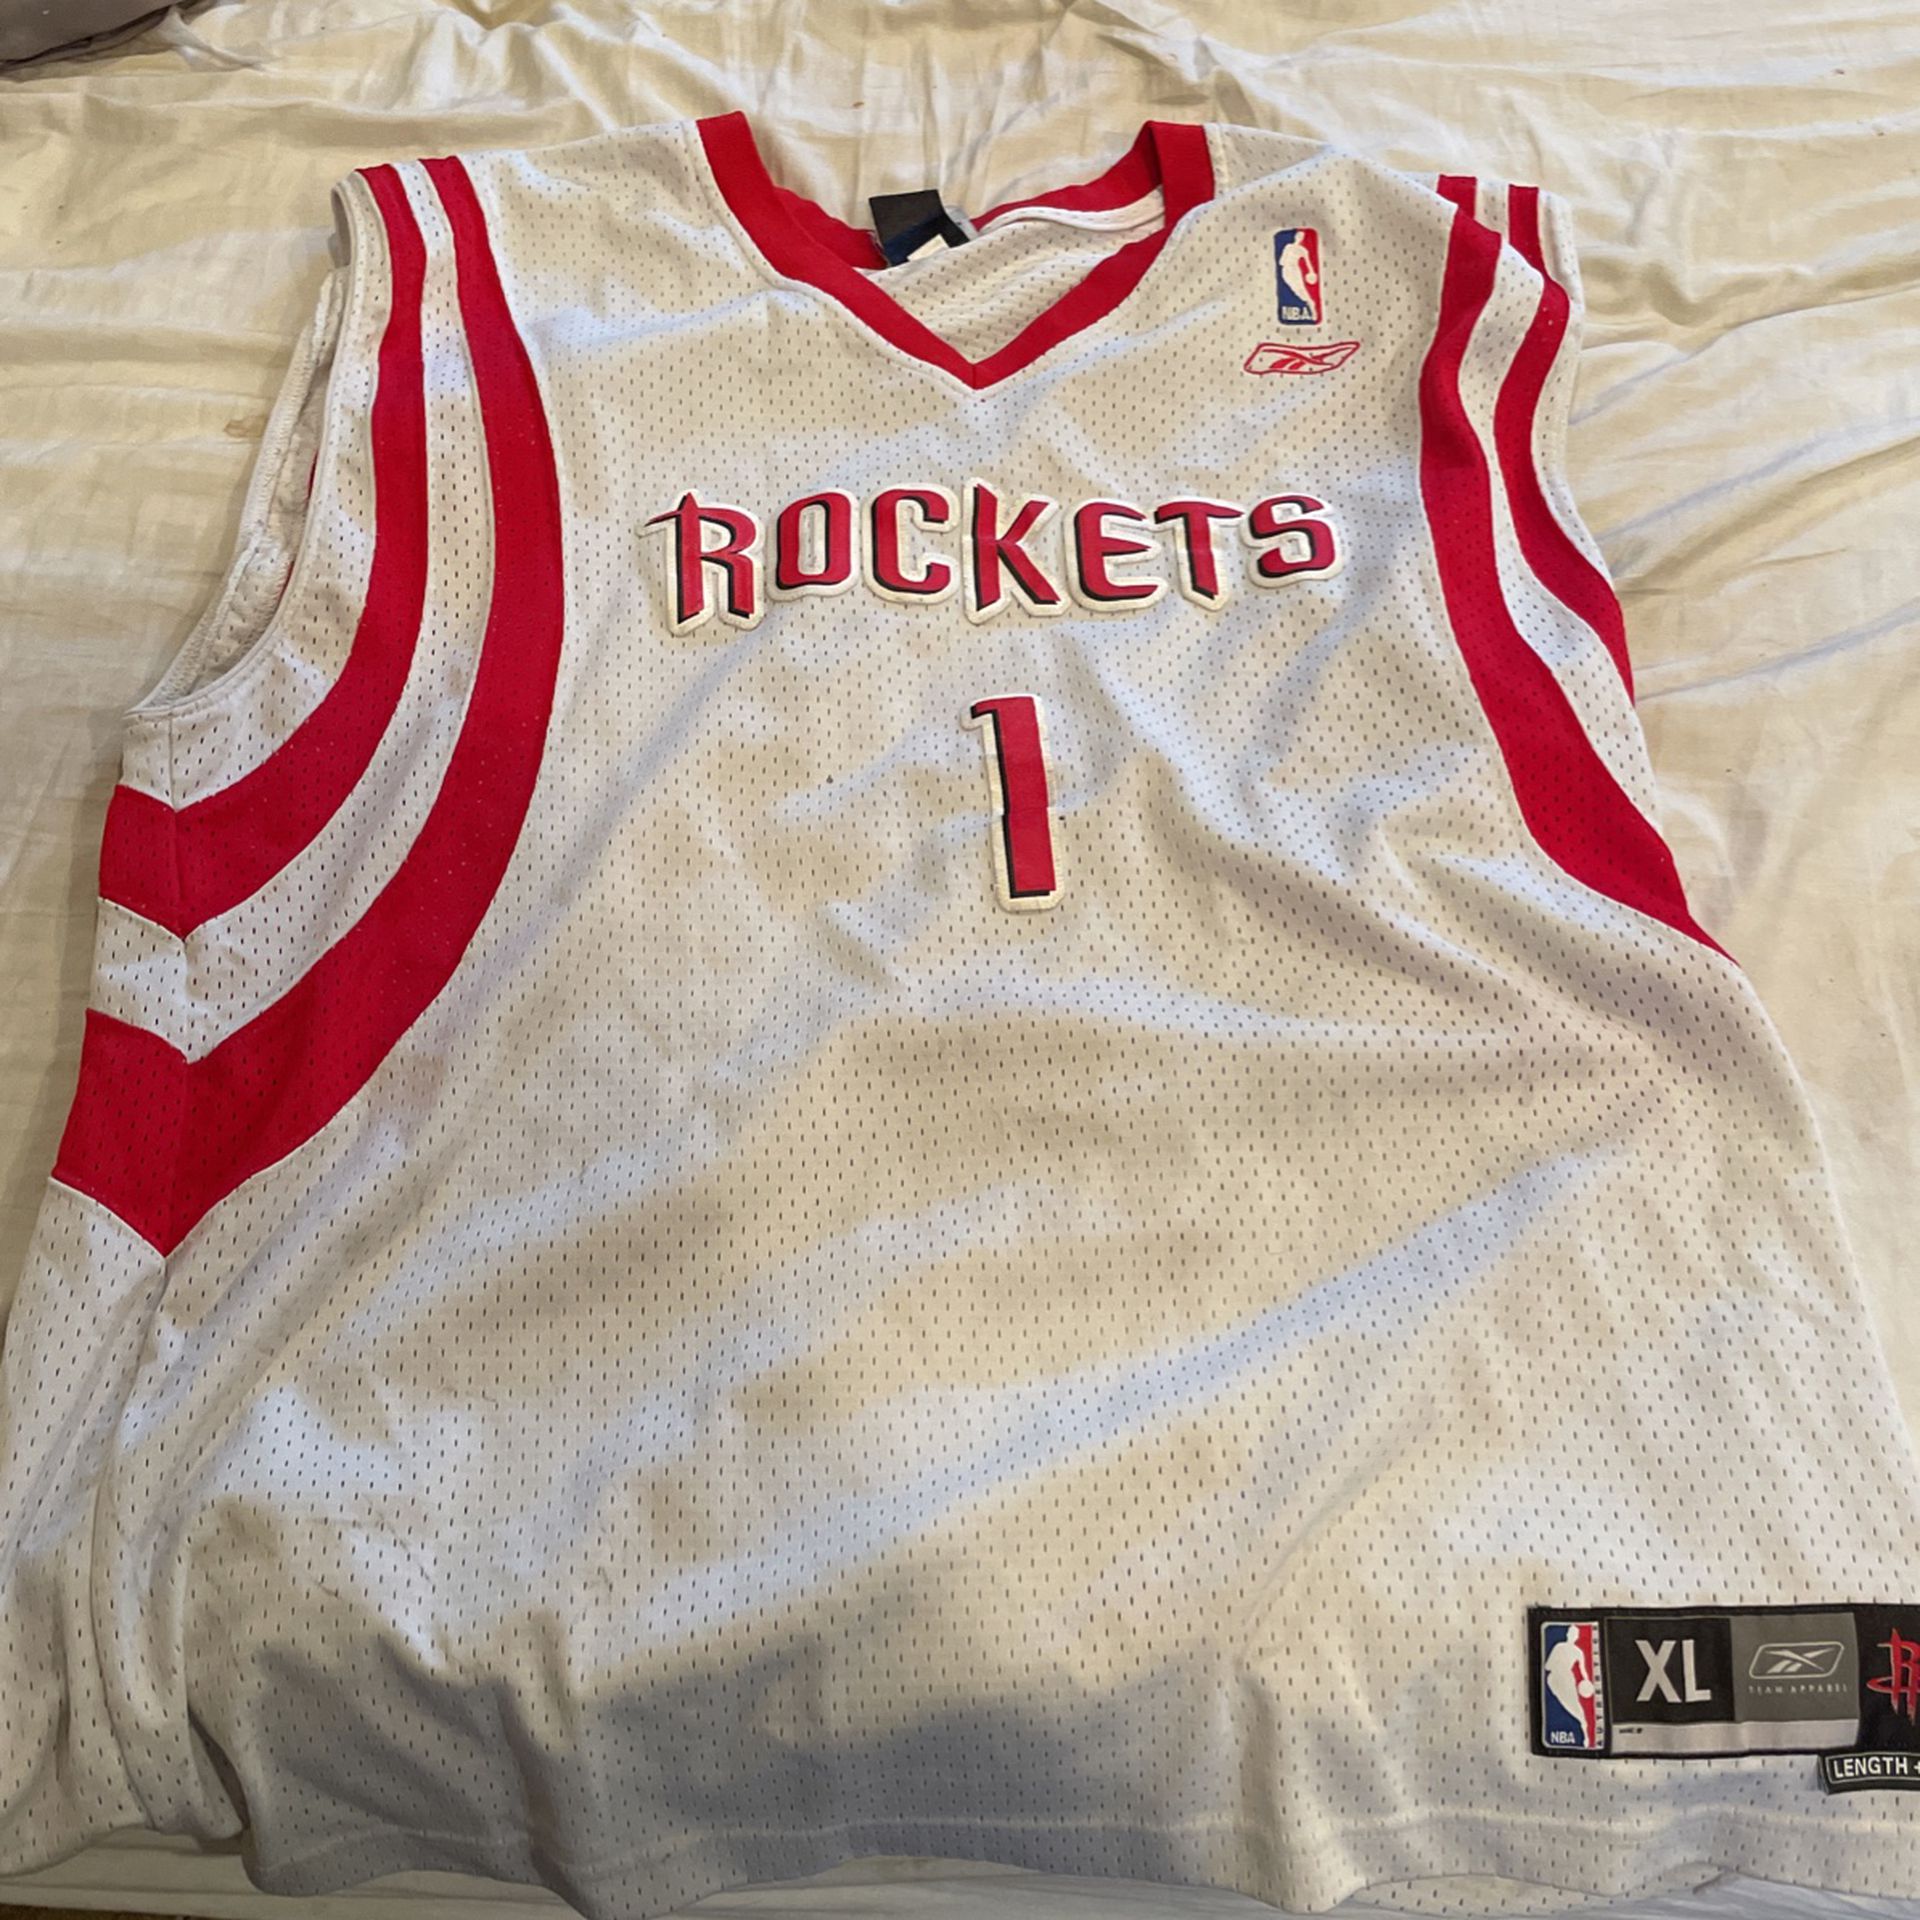 Rockets Jersey 